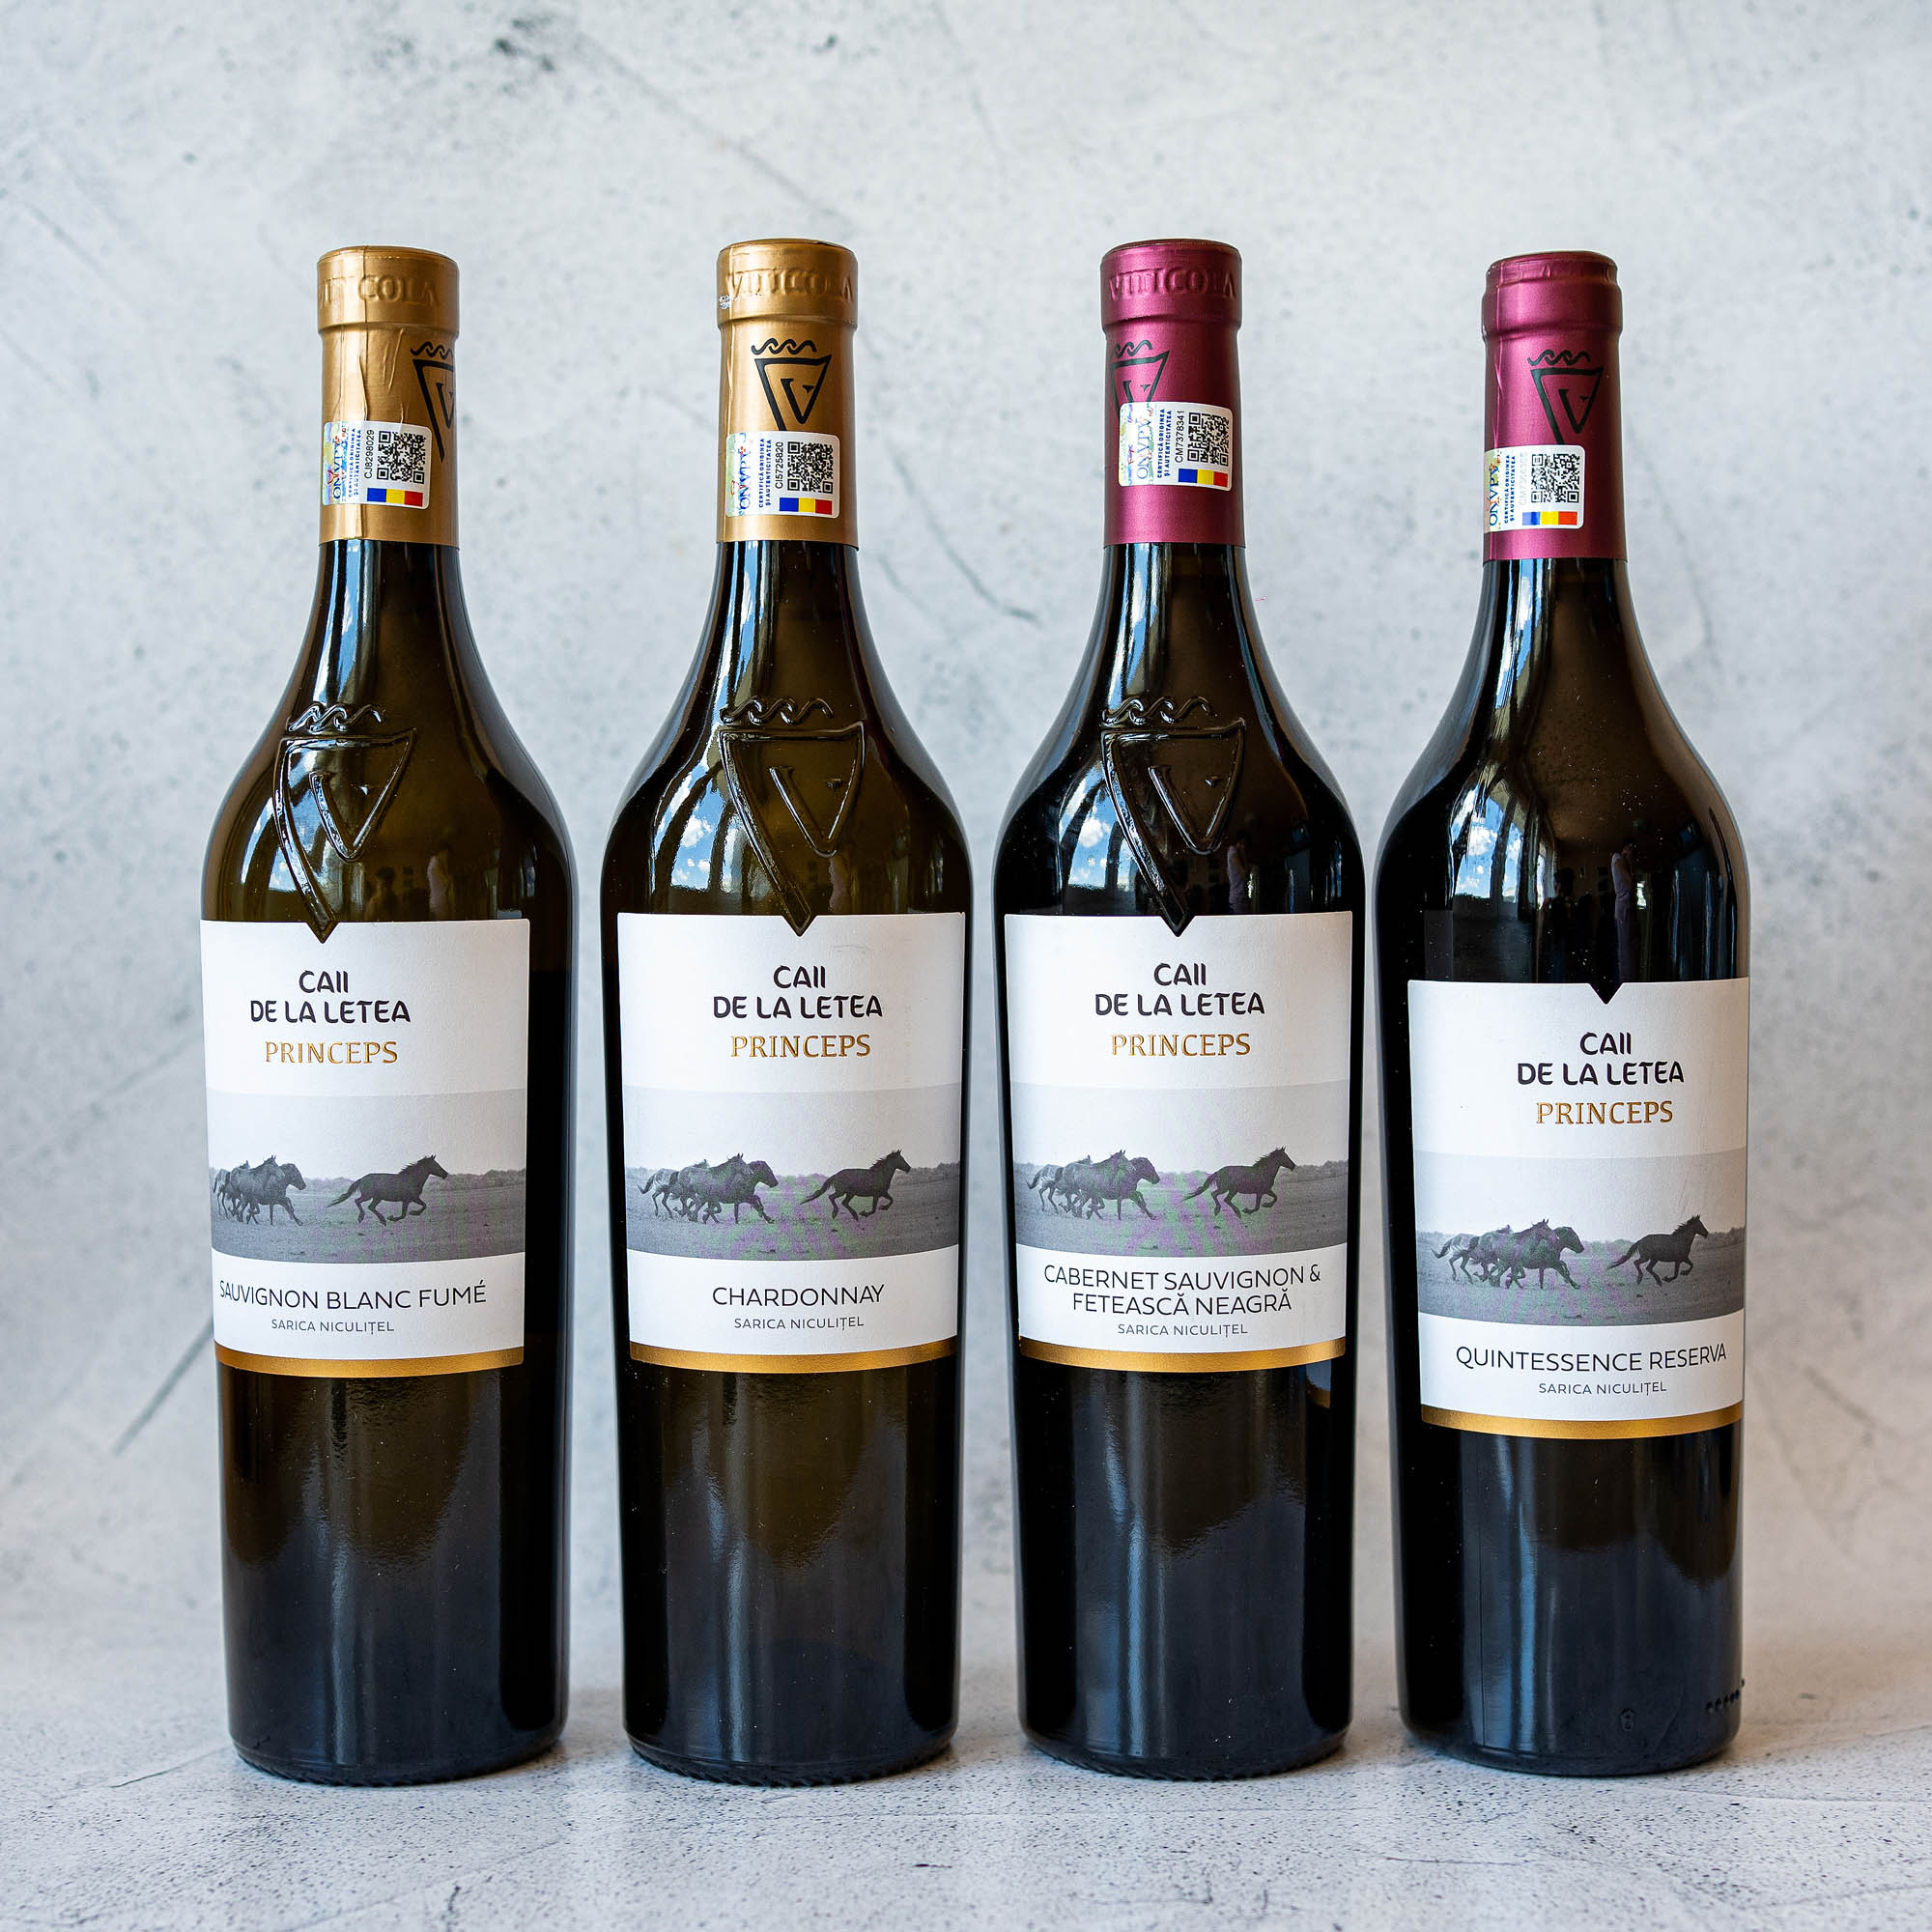 O nouă gamă de vinuri vine din Dobrogea: Caii de la Letea Princeps